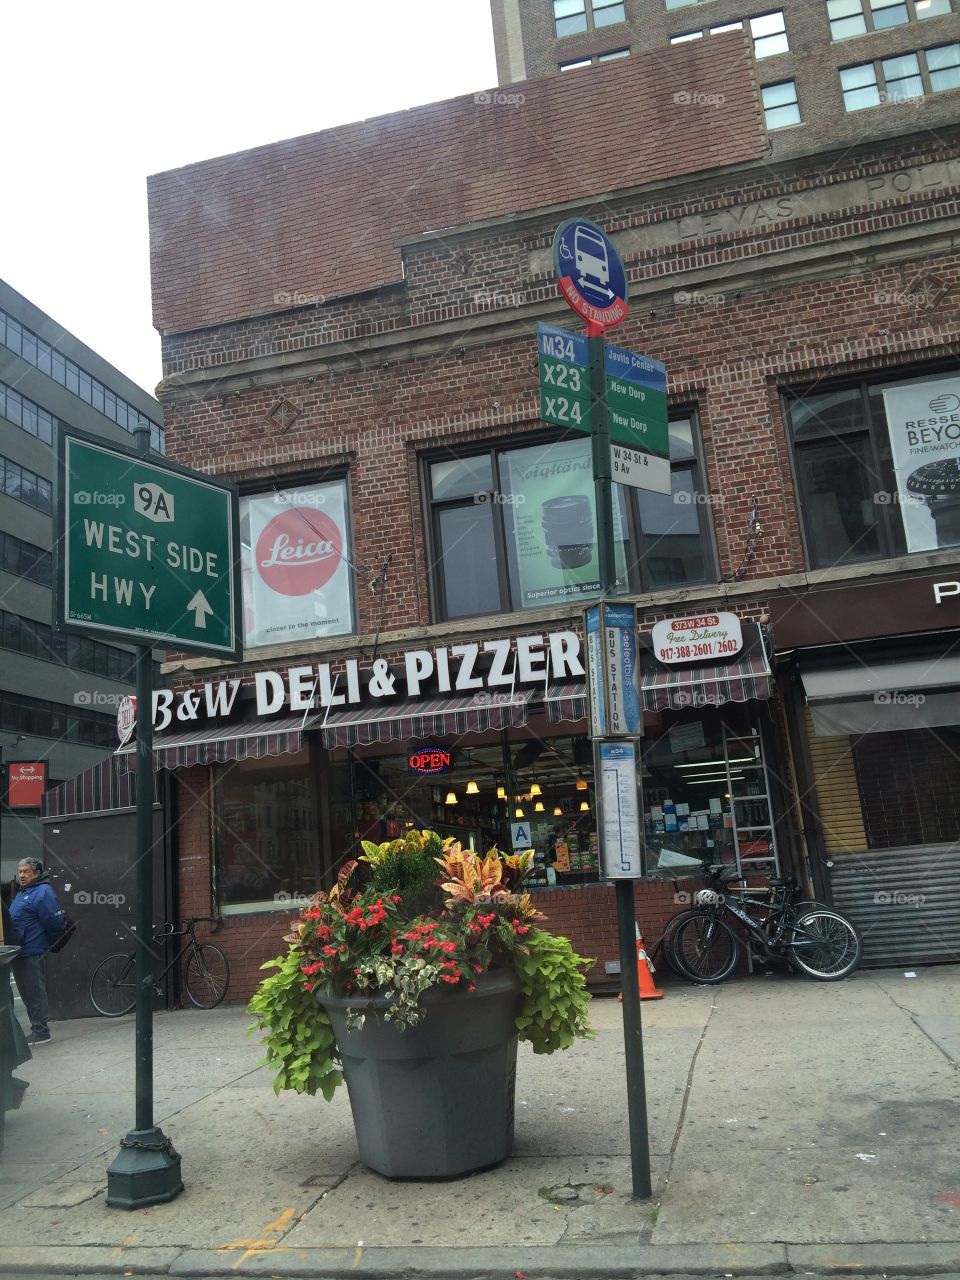 B&W Deli and Pizzeria in Nee York City. 